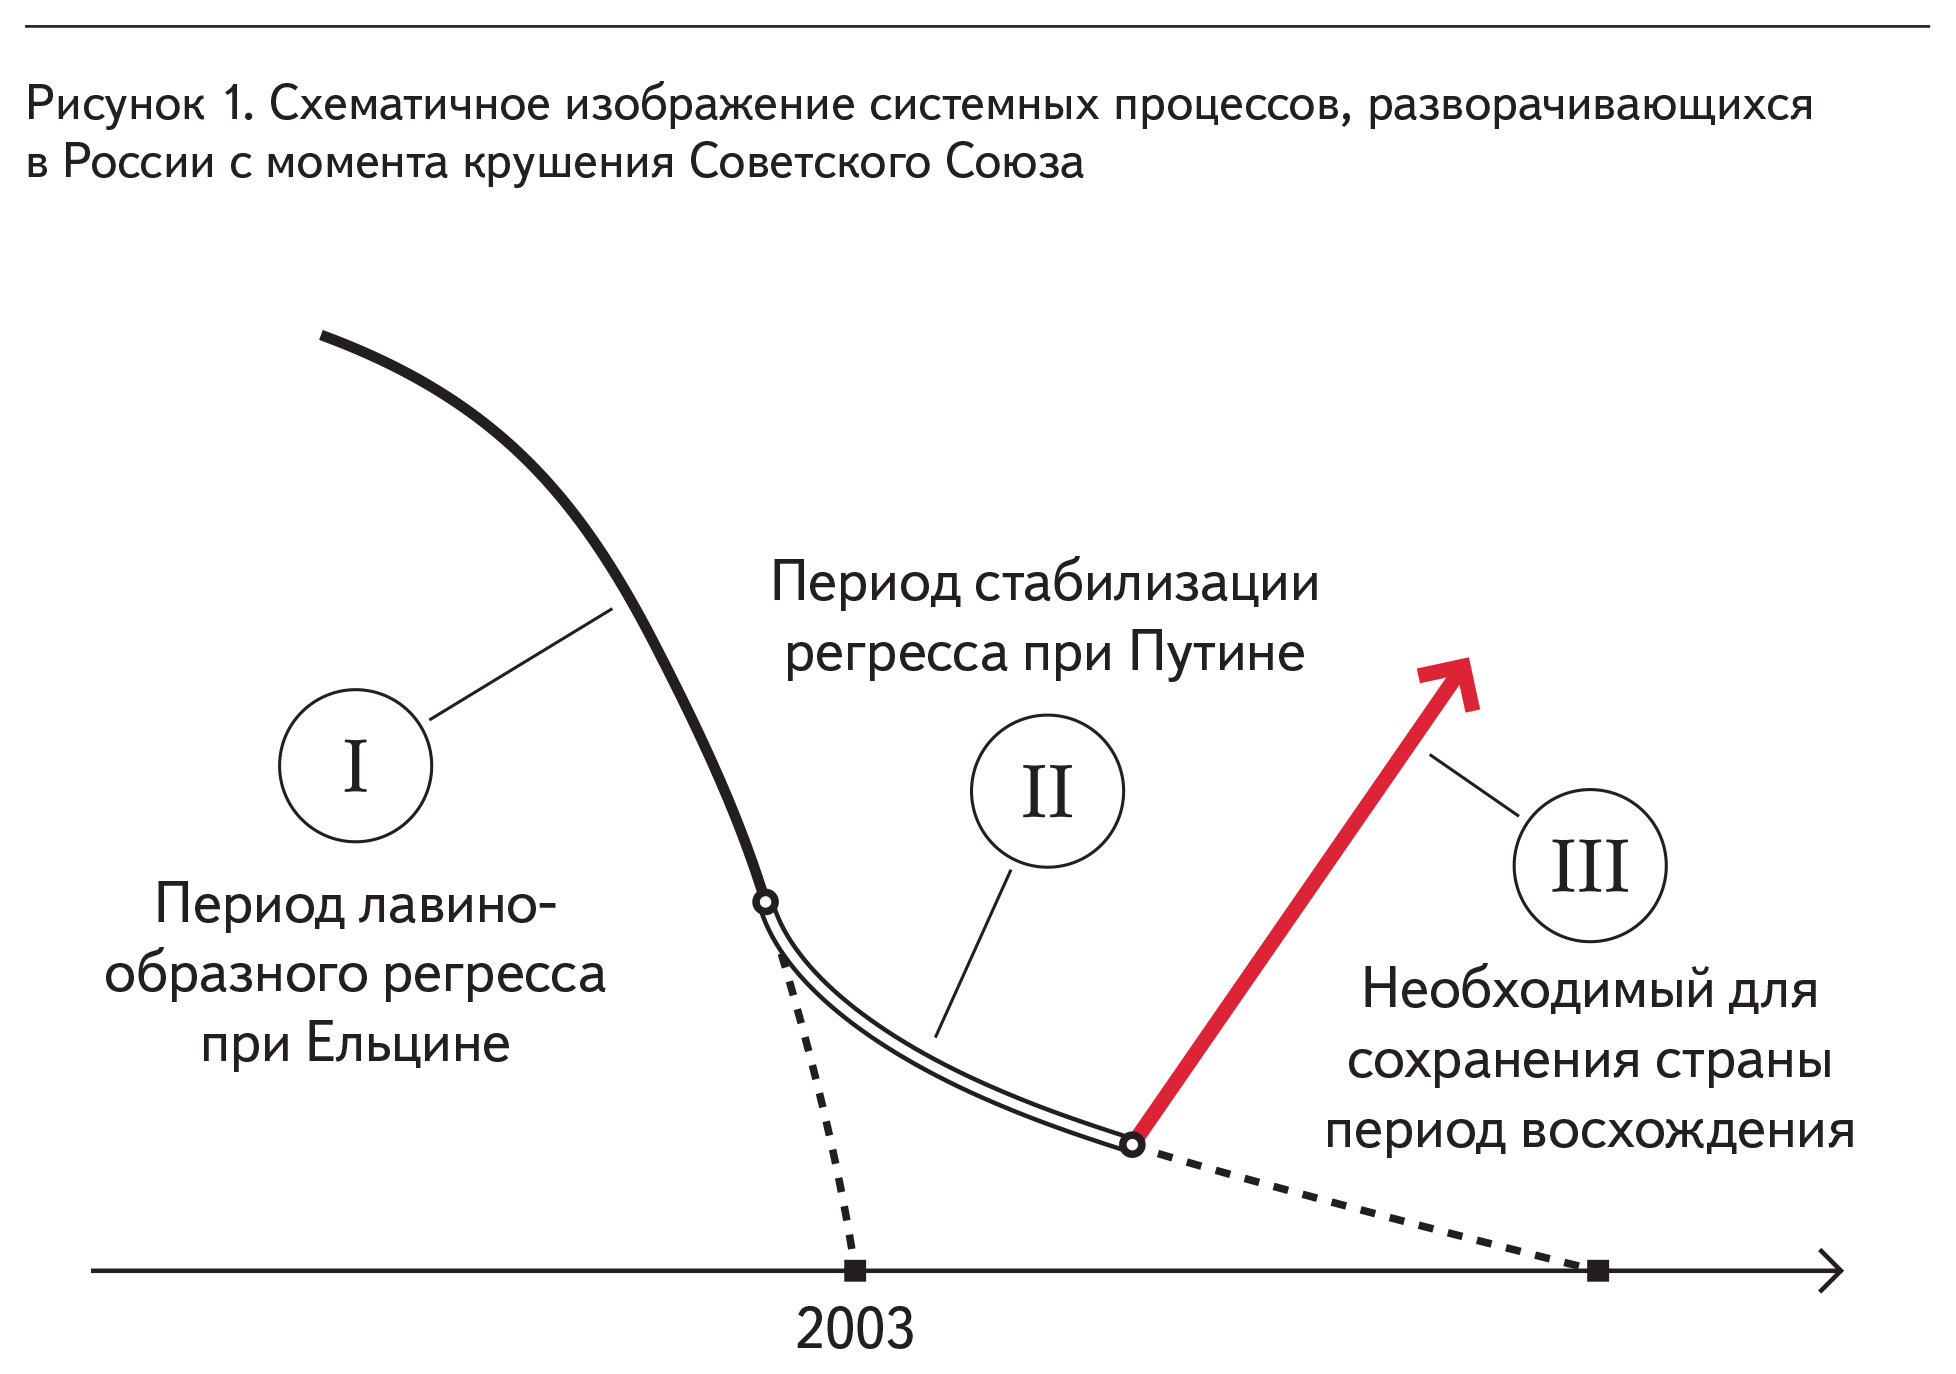 Рисунок 1. Схематичное изображение системных процессов, разворачивающихся в России с момента крушения Советского Союза